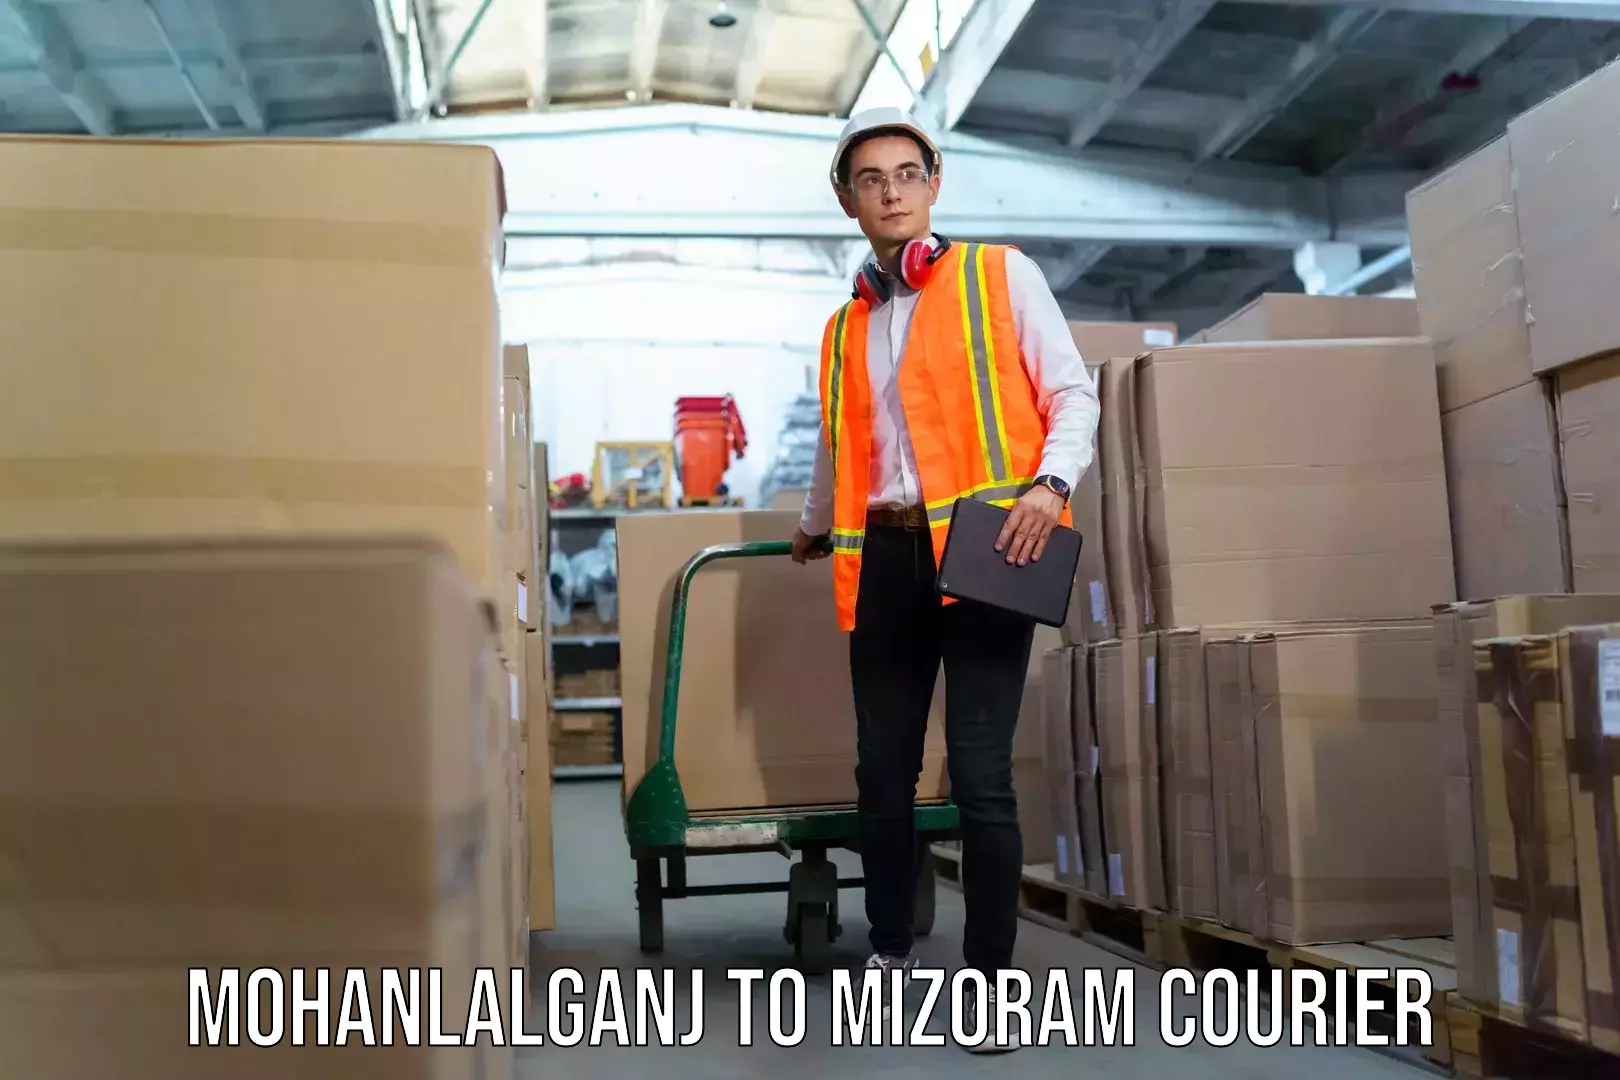 Baggage shipping experience Mohanlalganj to Siaha